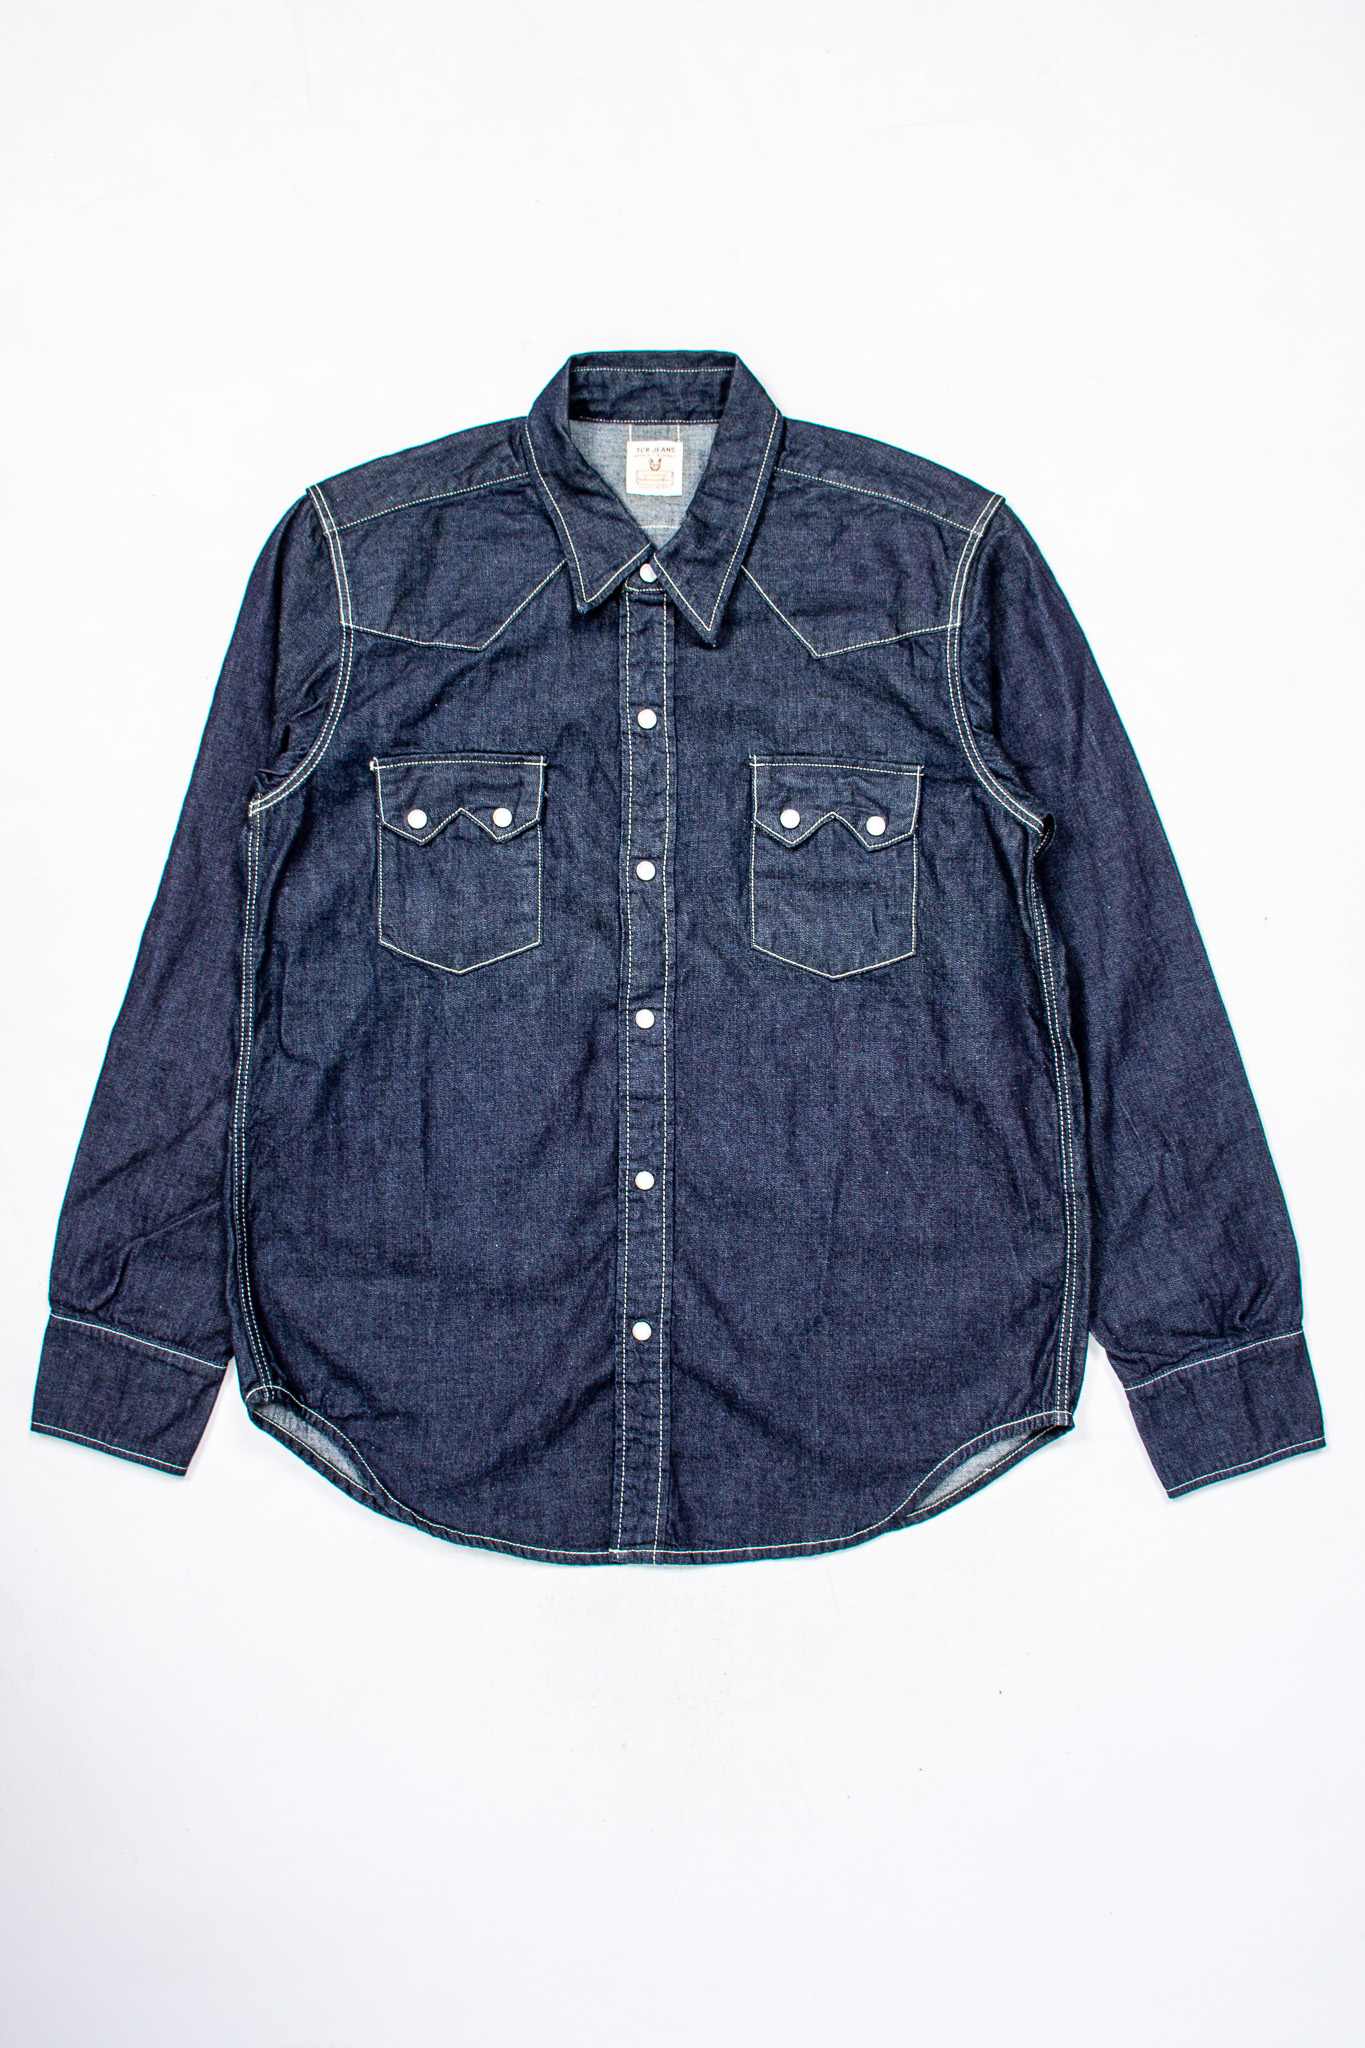 TCB Jeans - Dude Ranch Shirt Denim - Göteborg Manufaktur